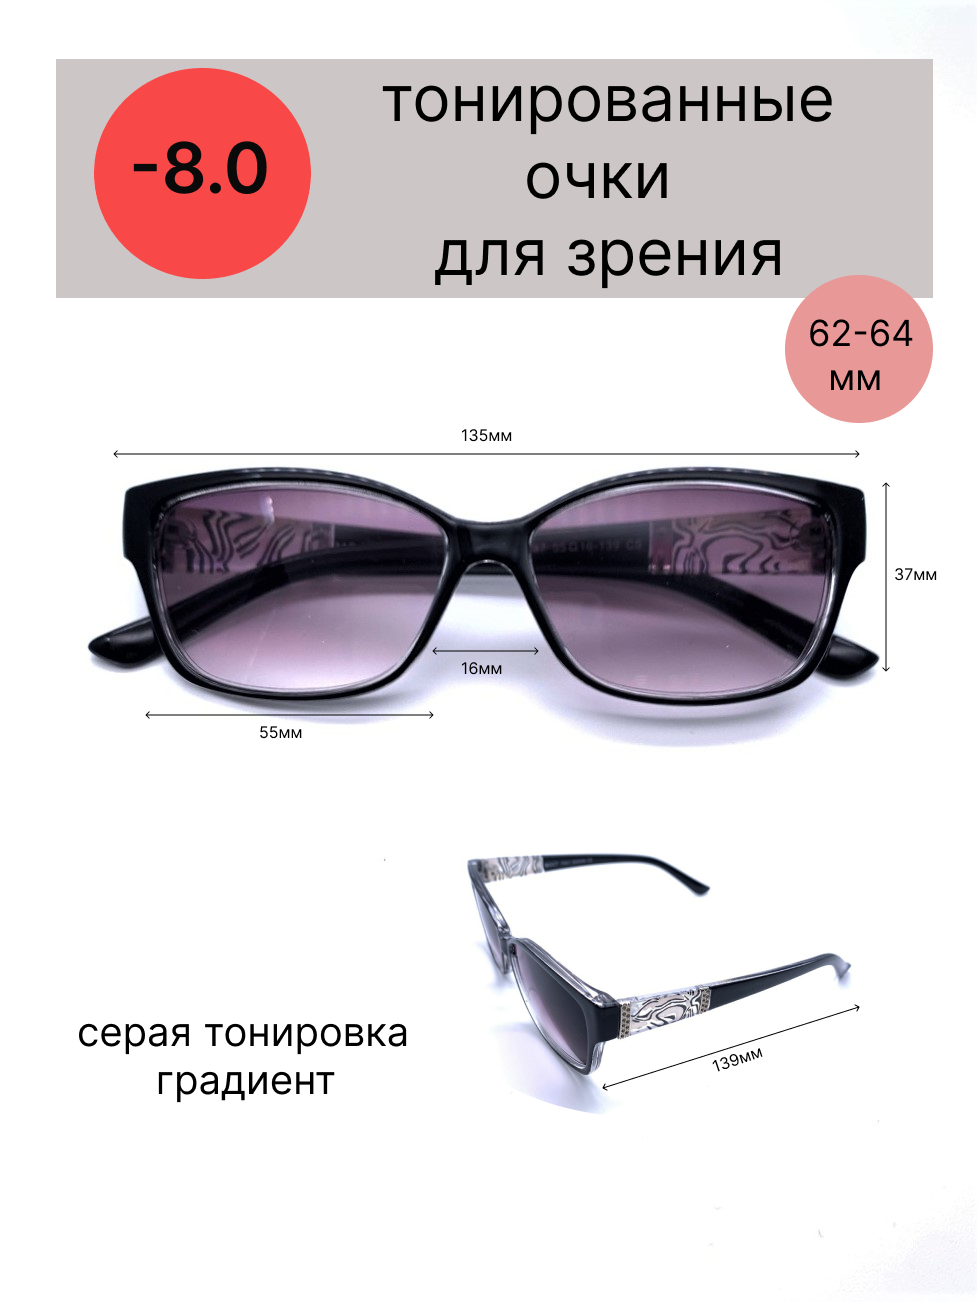 Тонированные очки с диоптриями-8.0